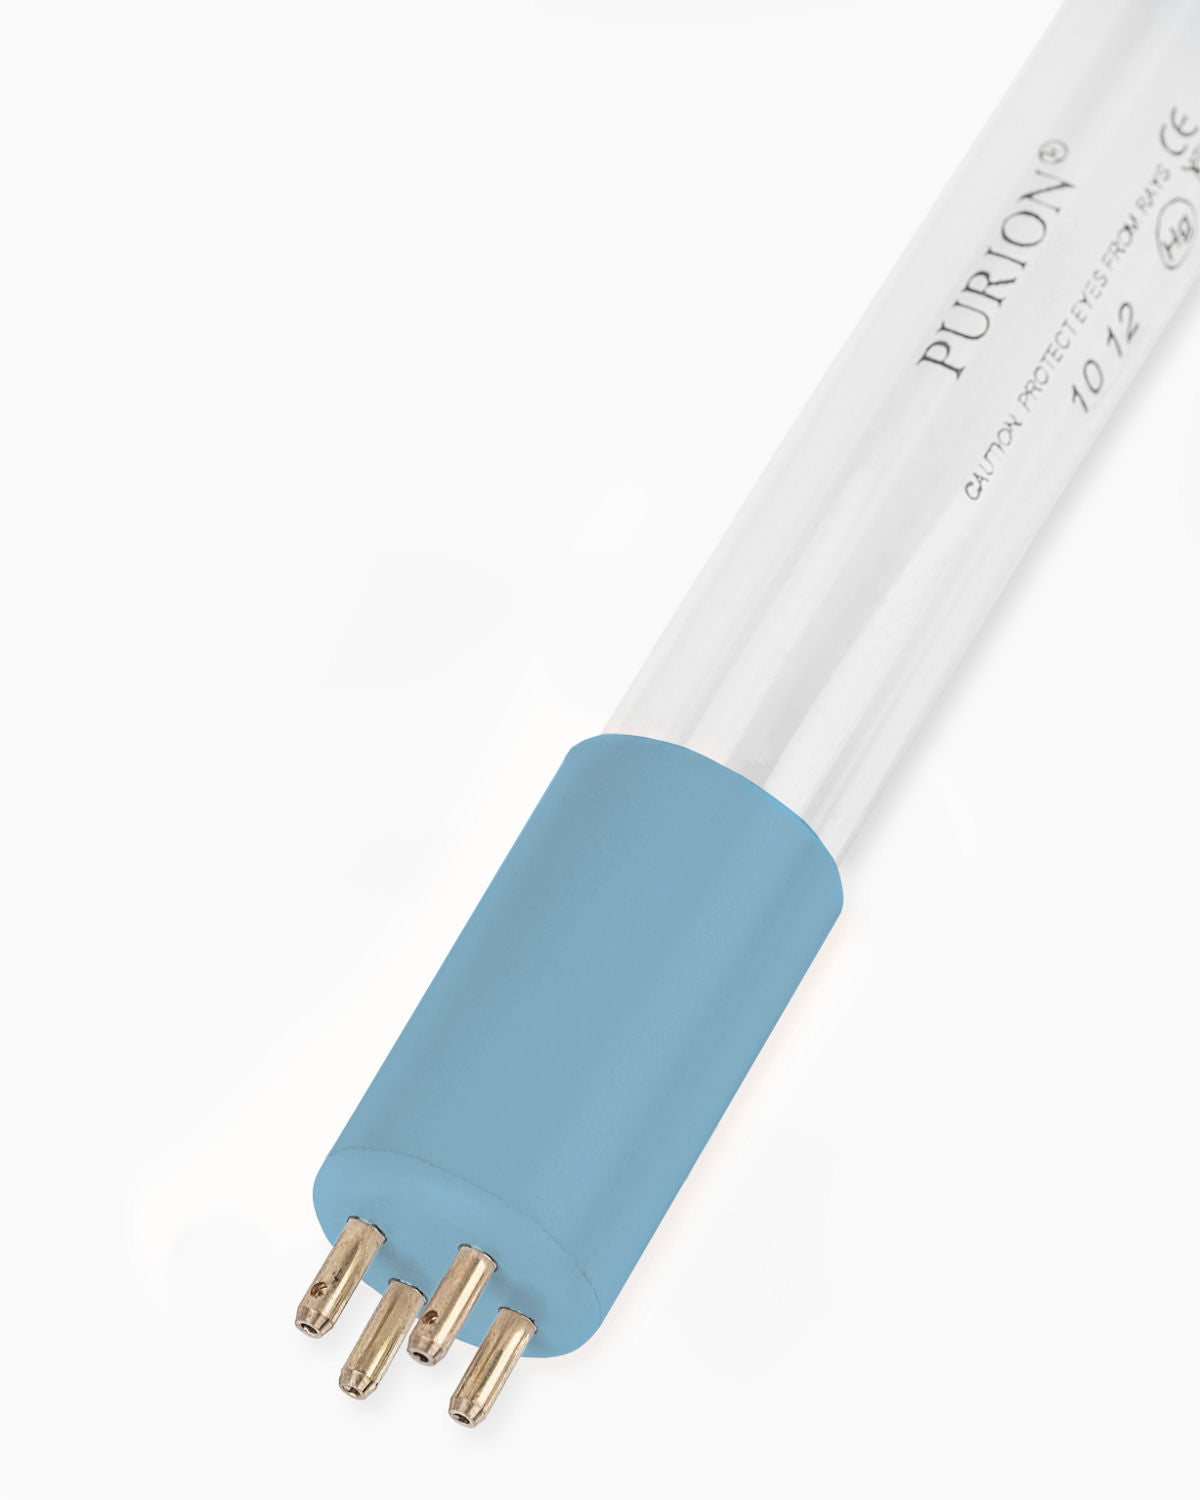 Eine blaue PURION IBC Universal 17W SPL BS-Röhre auf weißem Hintergrund zur Verbesserung der Trinkwasserqualität und zur Beseitigung von Verkeimungen von der UV Concept GmbH.